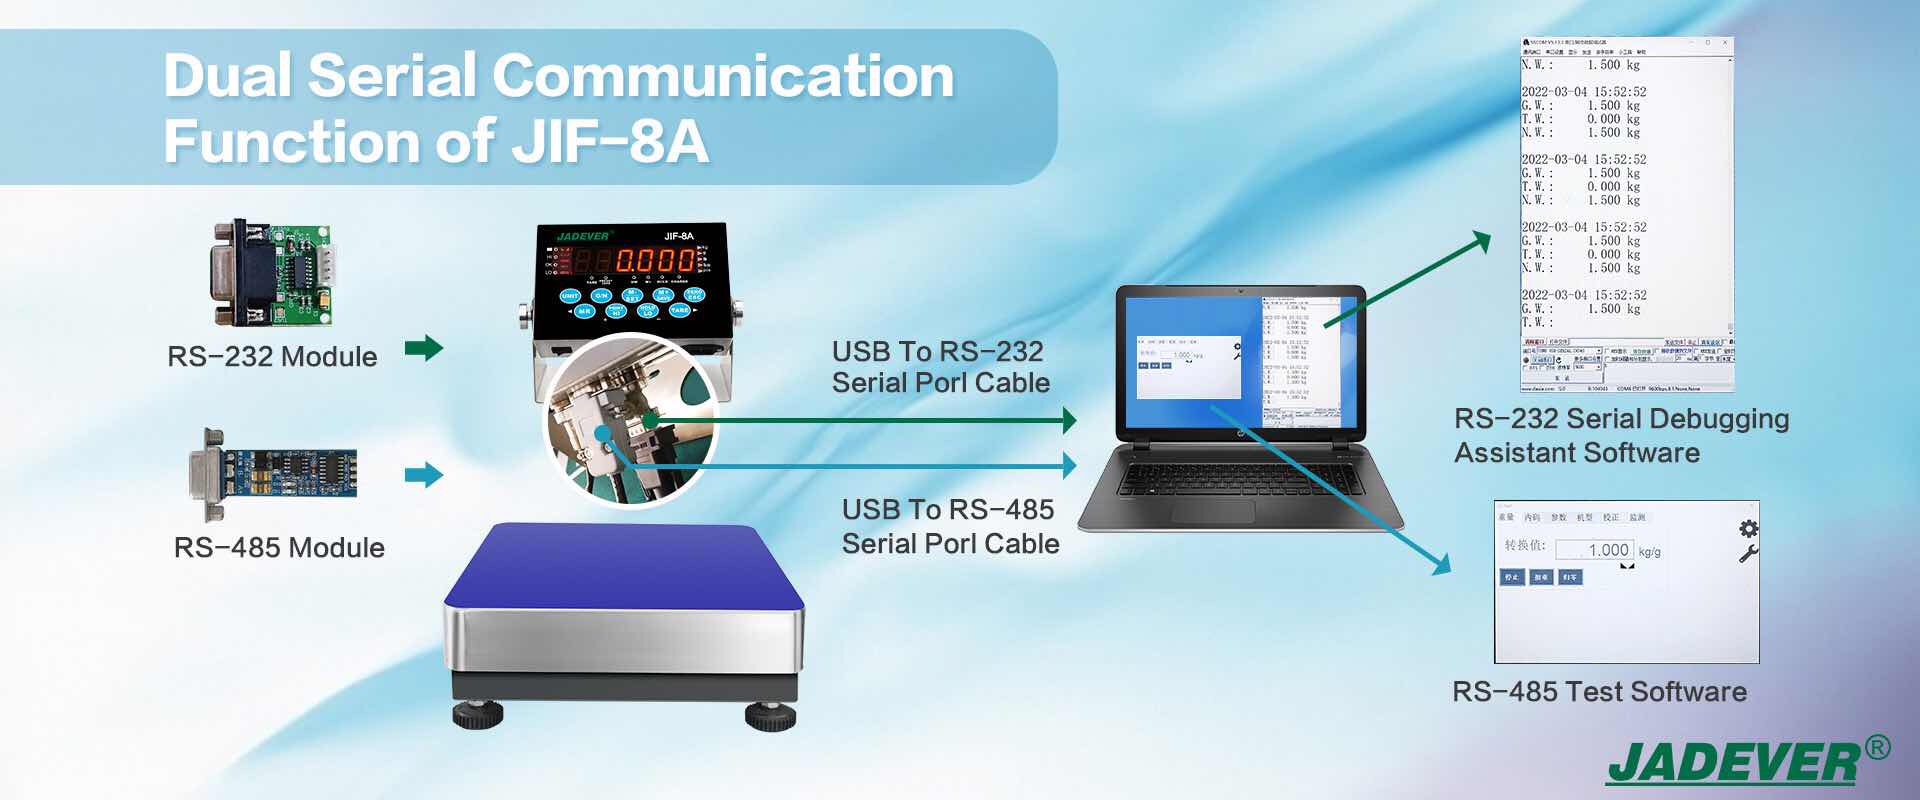 double fonction de communication série de JIF-8A